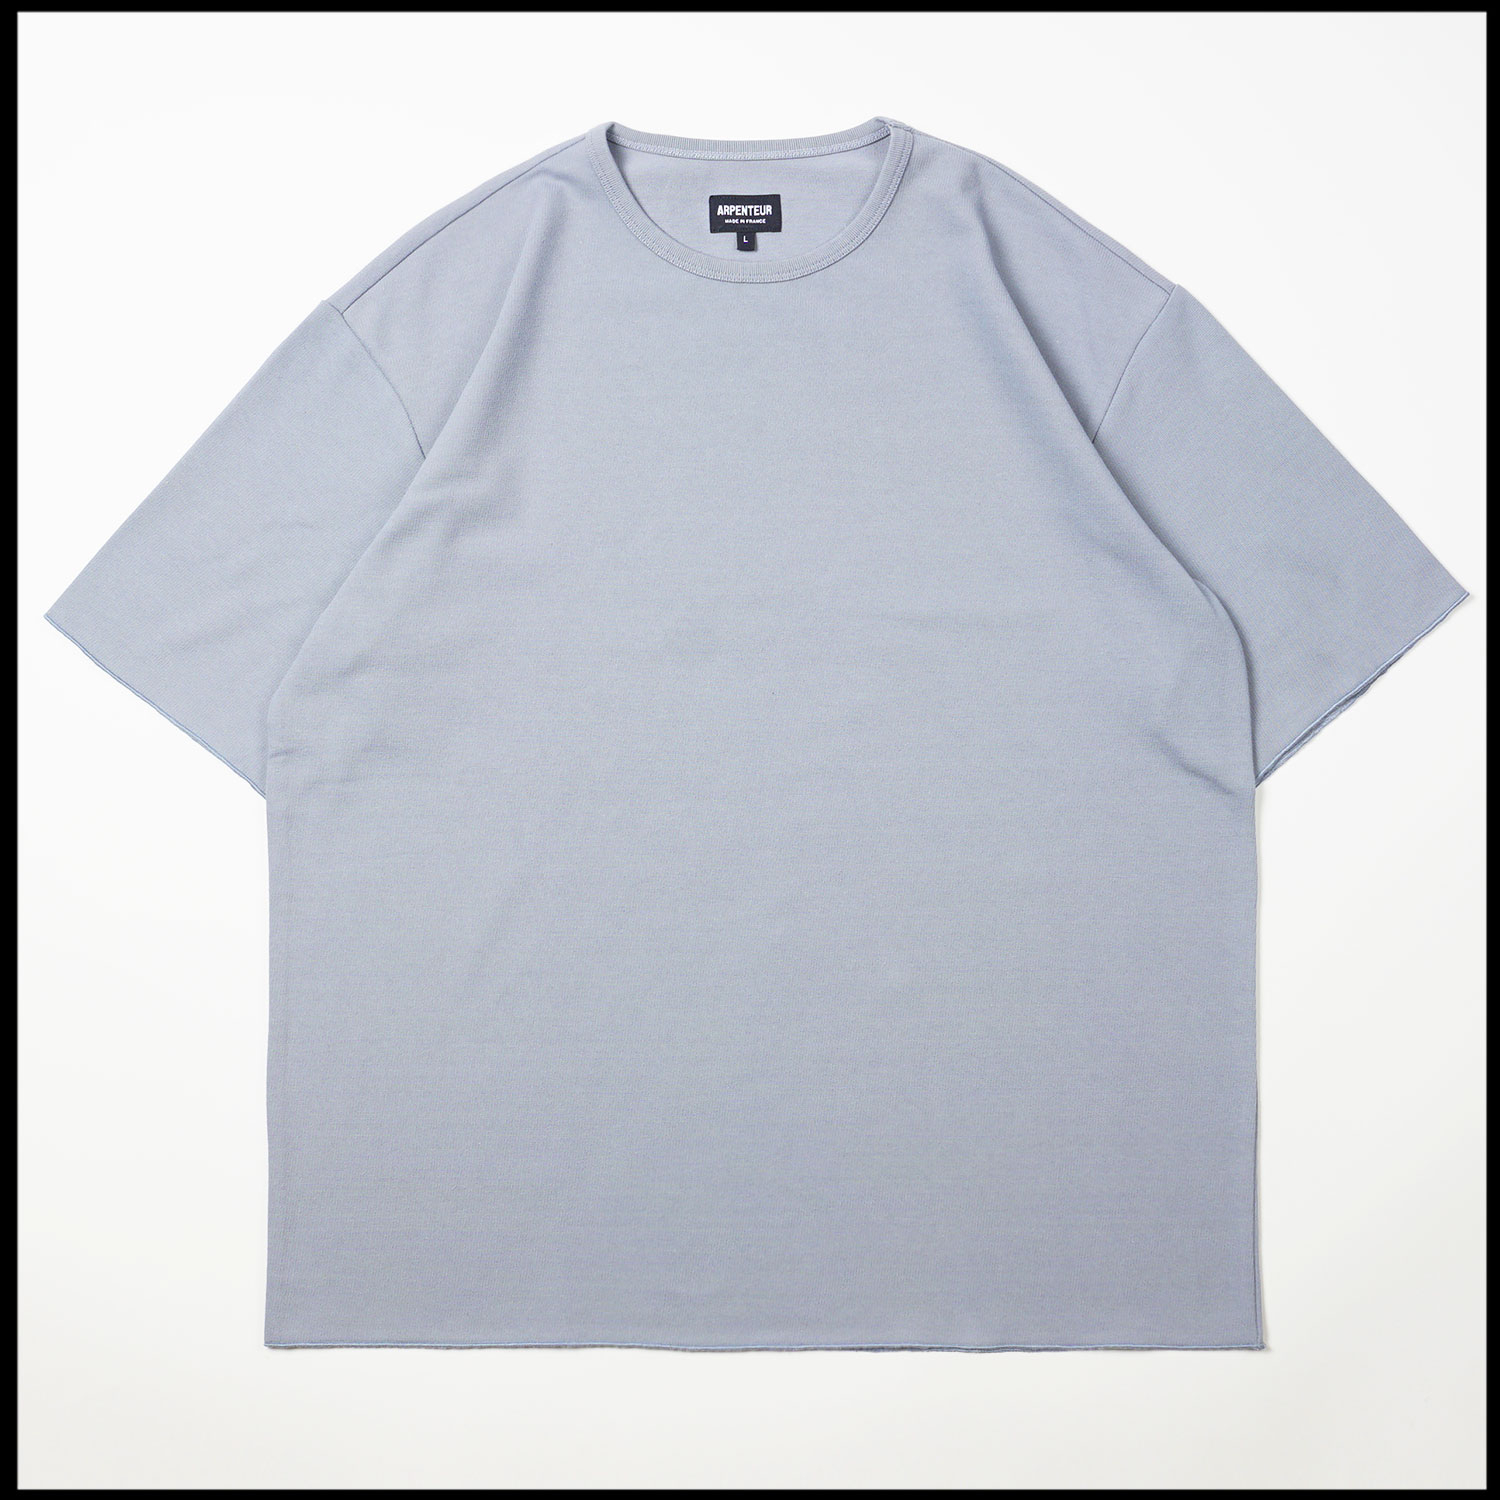 T-shirt Pontus coloris Bleu saxe par Arpenteur